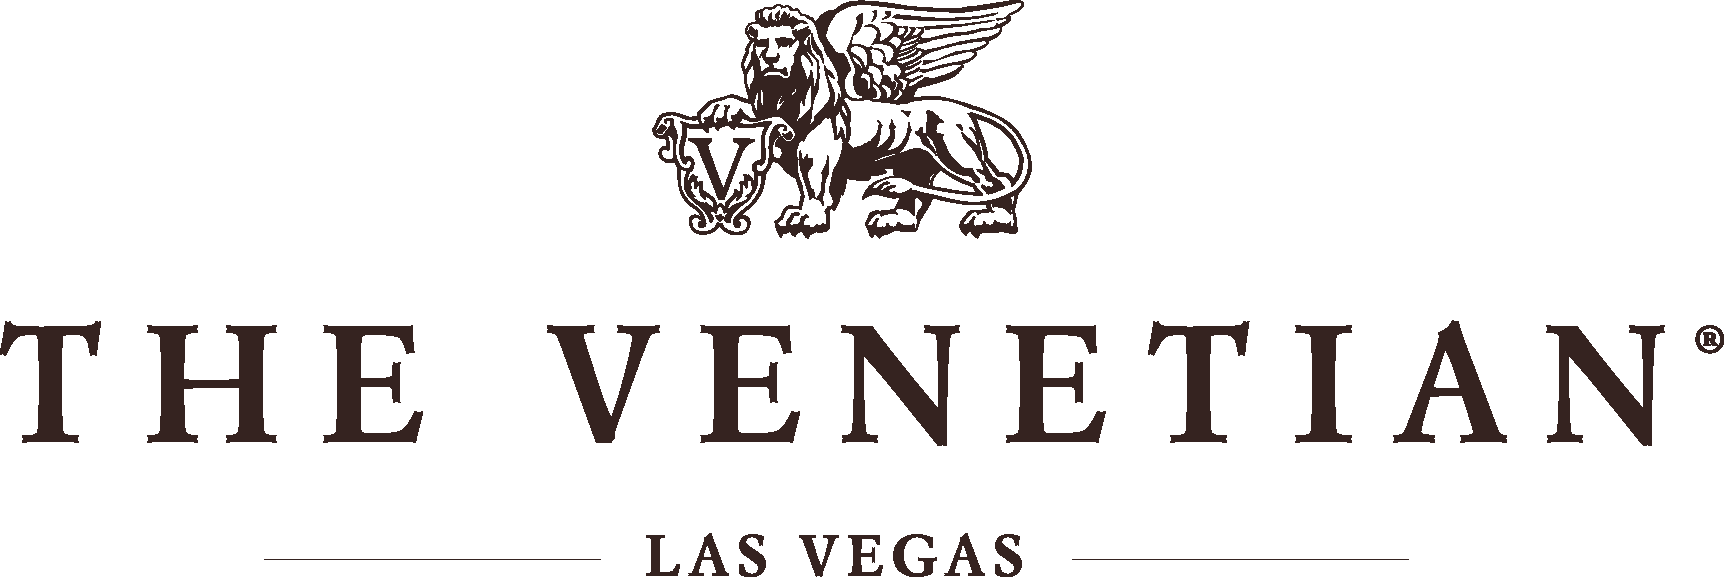 venetian-logo.png